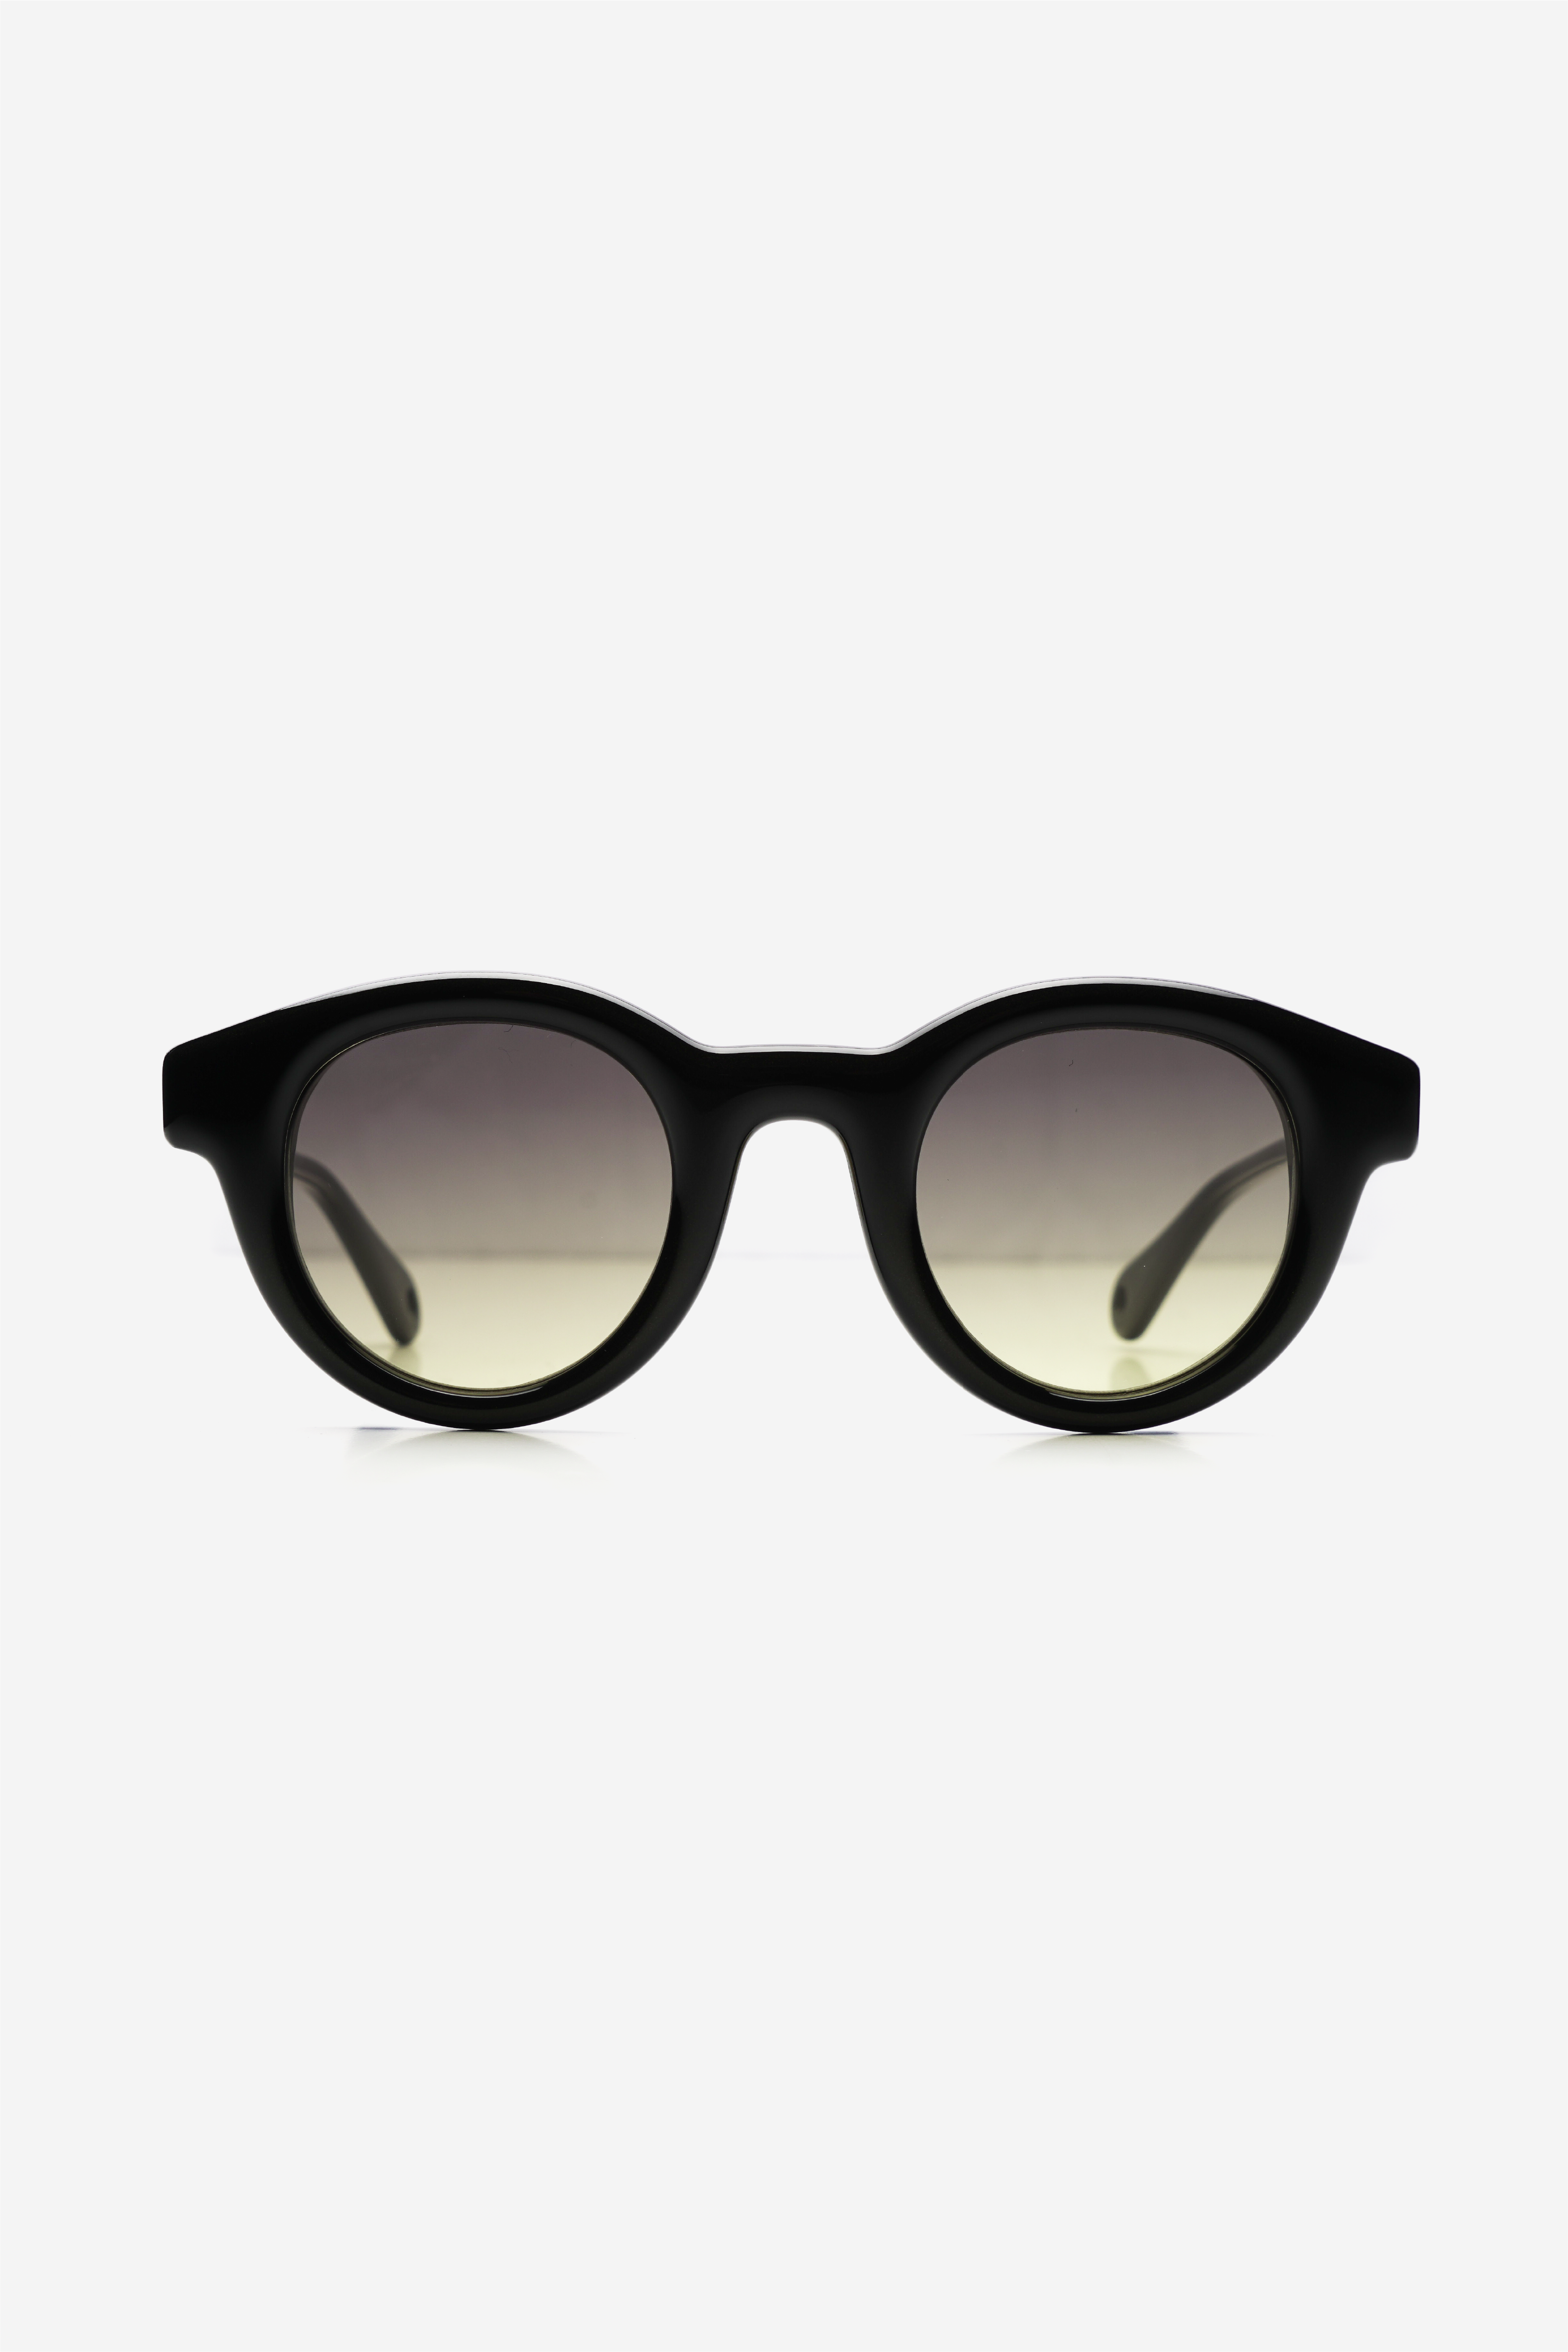 Selectshop FRAME - BRAIN DEAD Sugi Sunglasses All-Accessories Dubai